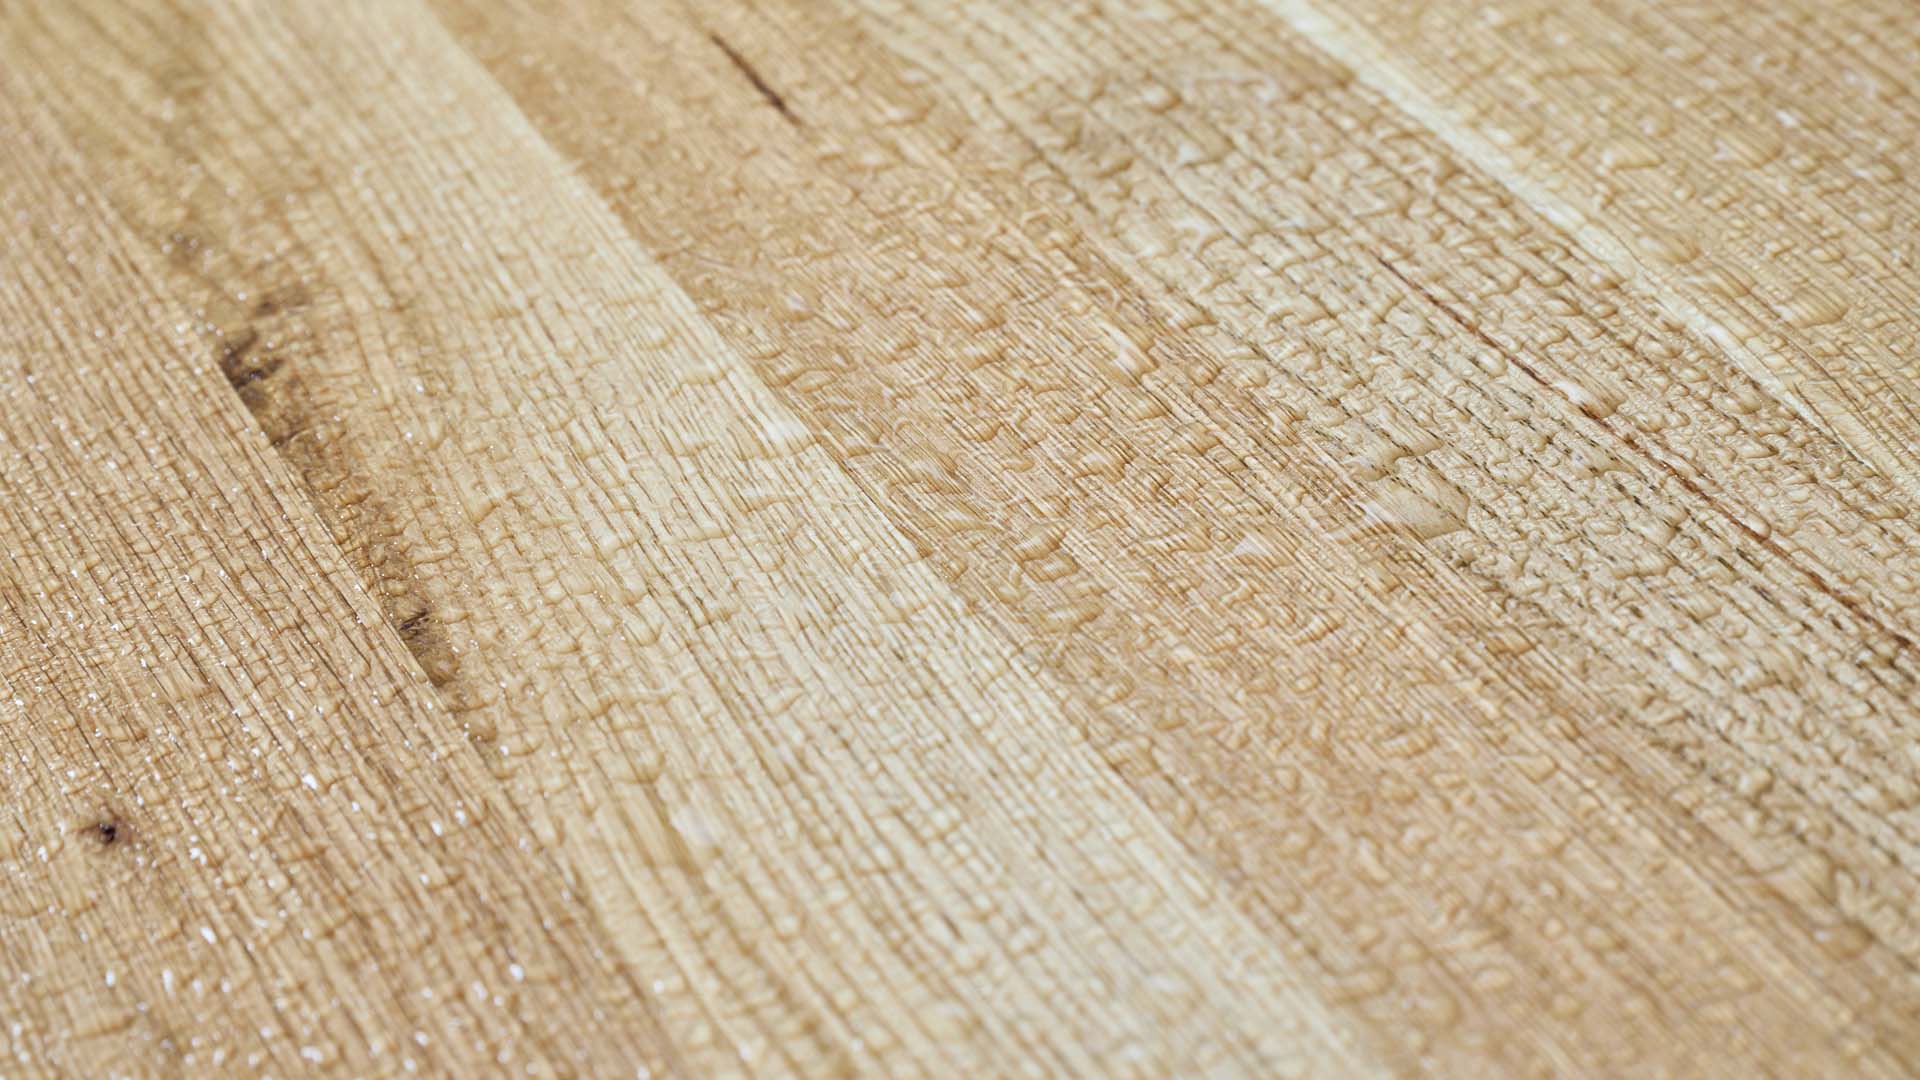 Designgarnitur Lago mit Wassertropfen auf der Oberfläche des Holzes. Die UV-Lasur schützt die Tischplatte vor Verformungen und Verfärbungen. Das Set ist somit witterungsbeständig und schwer entflammbar.